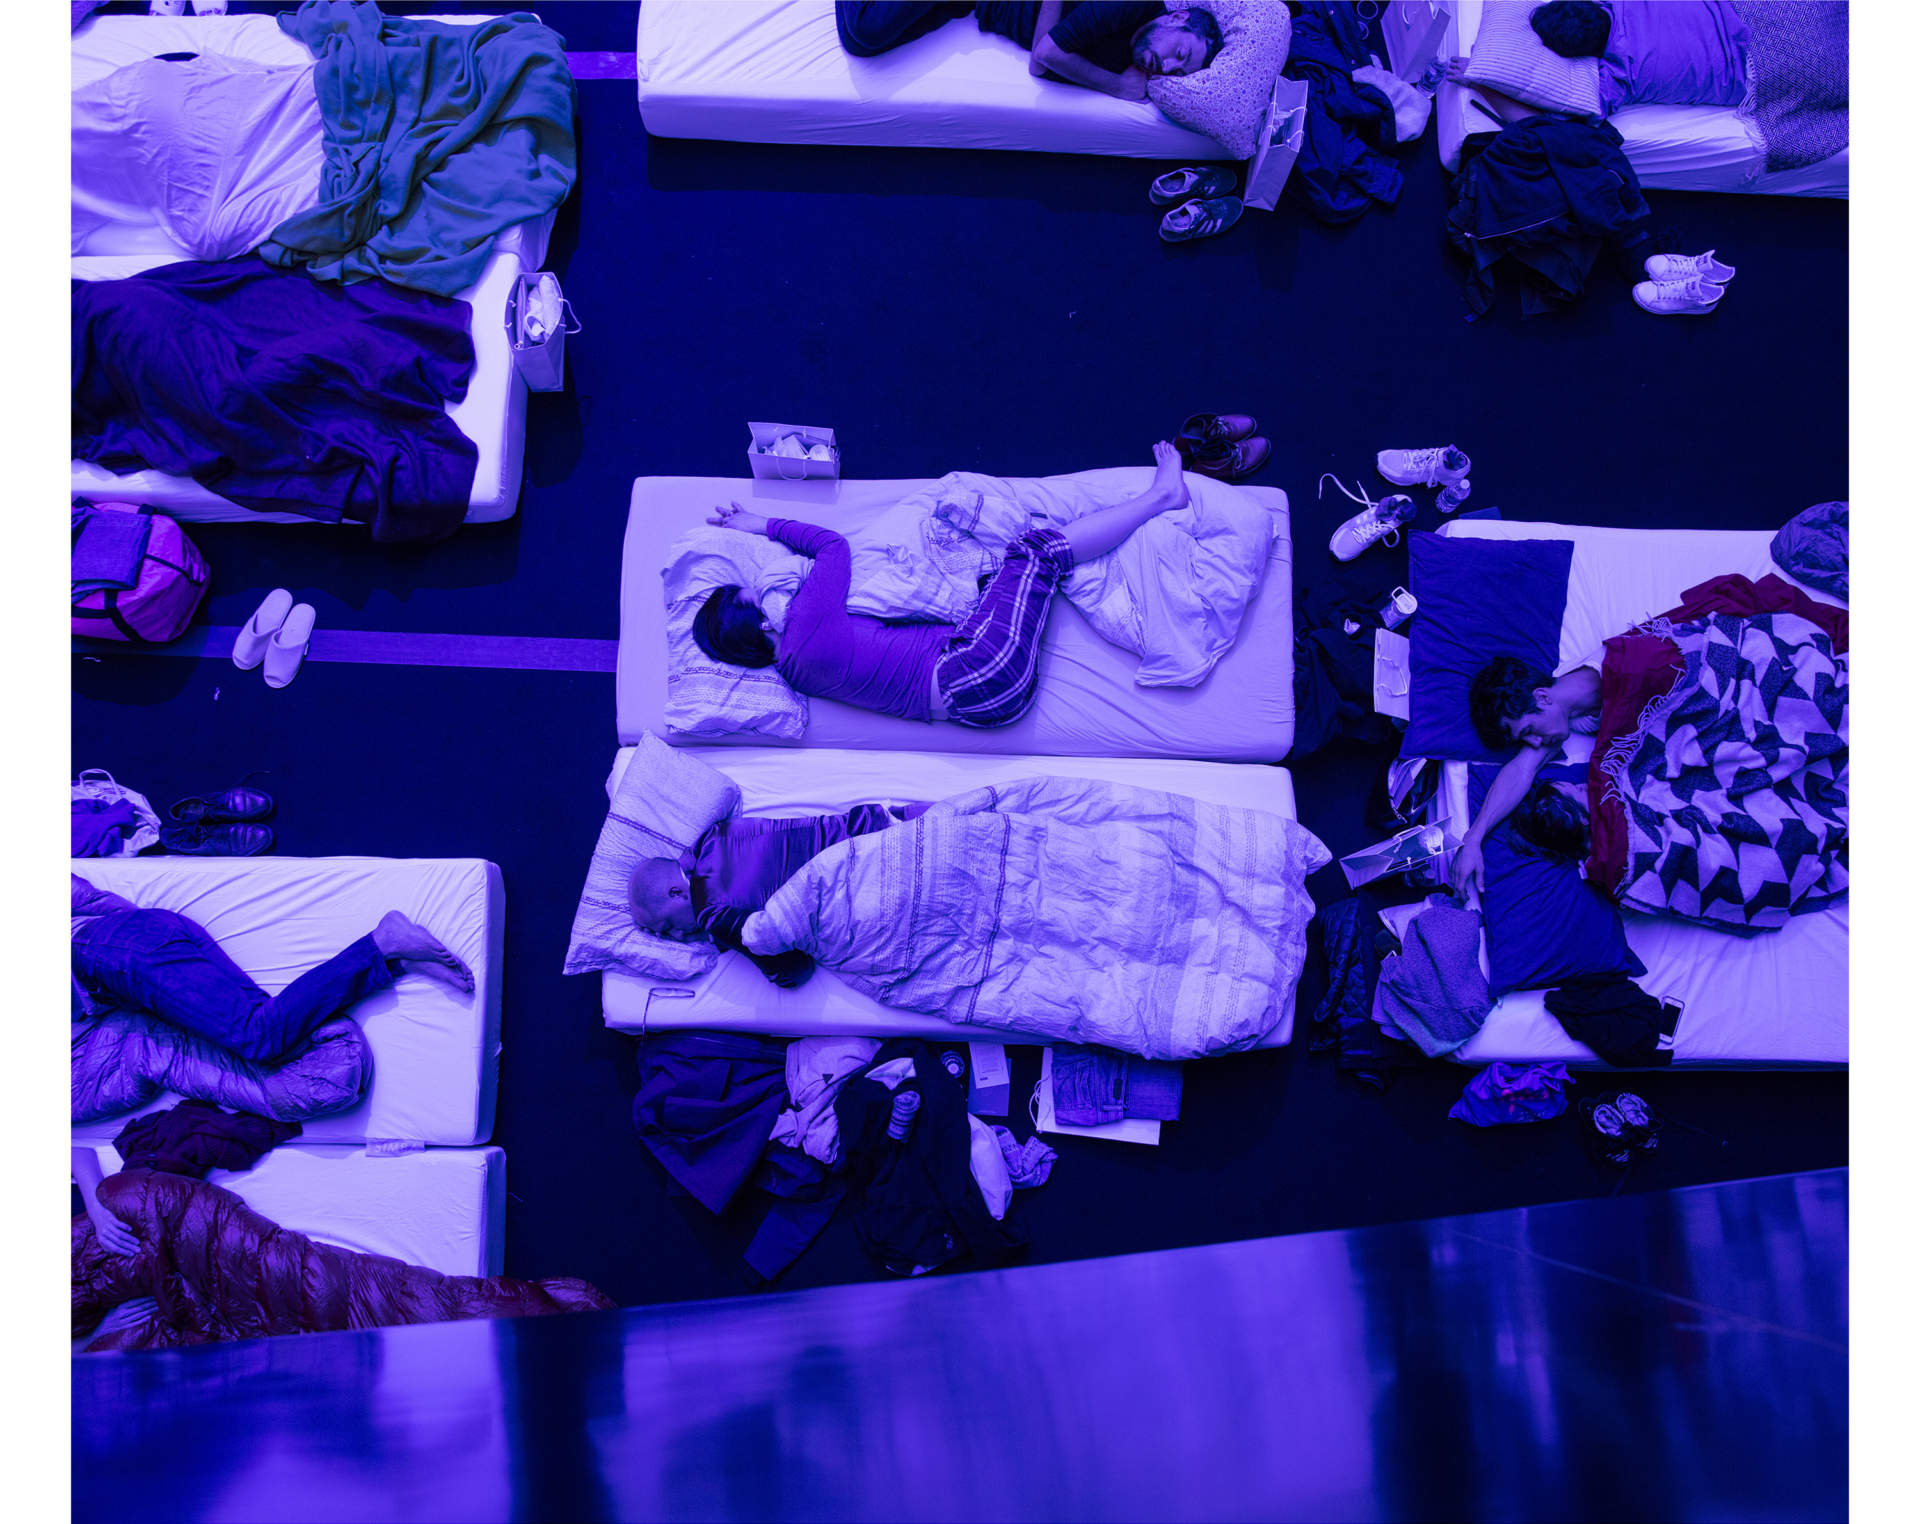 På Philharmonie de Paris, i Paris, sover hundratals människor sig igenom en åtta timmar lång konsert av kompositören Max Richter. Richter har skapat ett verk han kallar ”SLEEP”, ett minimalistiskt och vetenskapligt verk som guidar lyssnarna genom en hel natt.